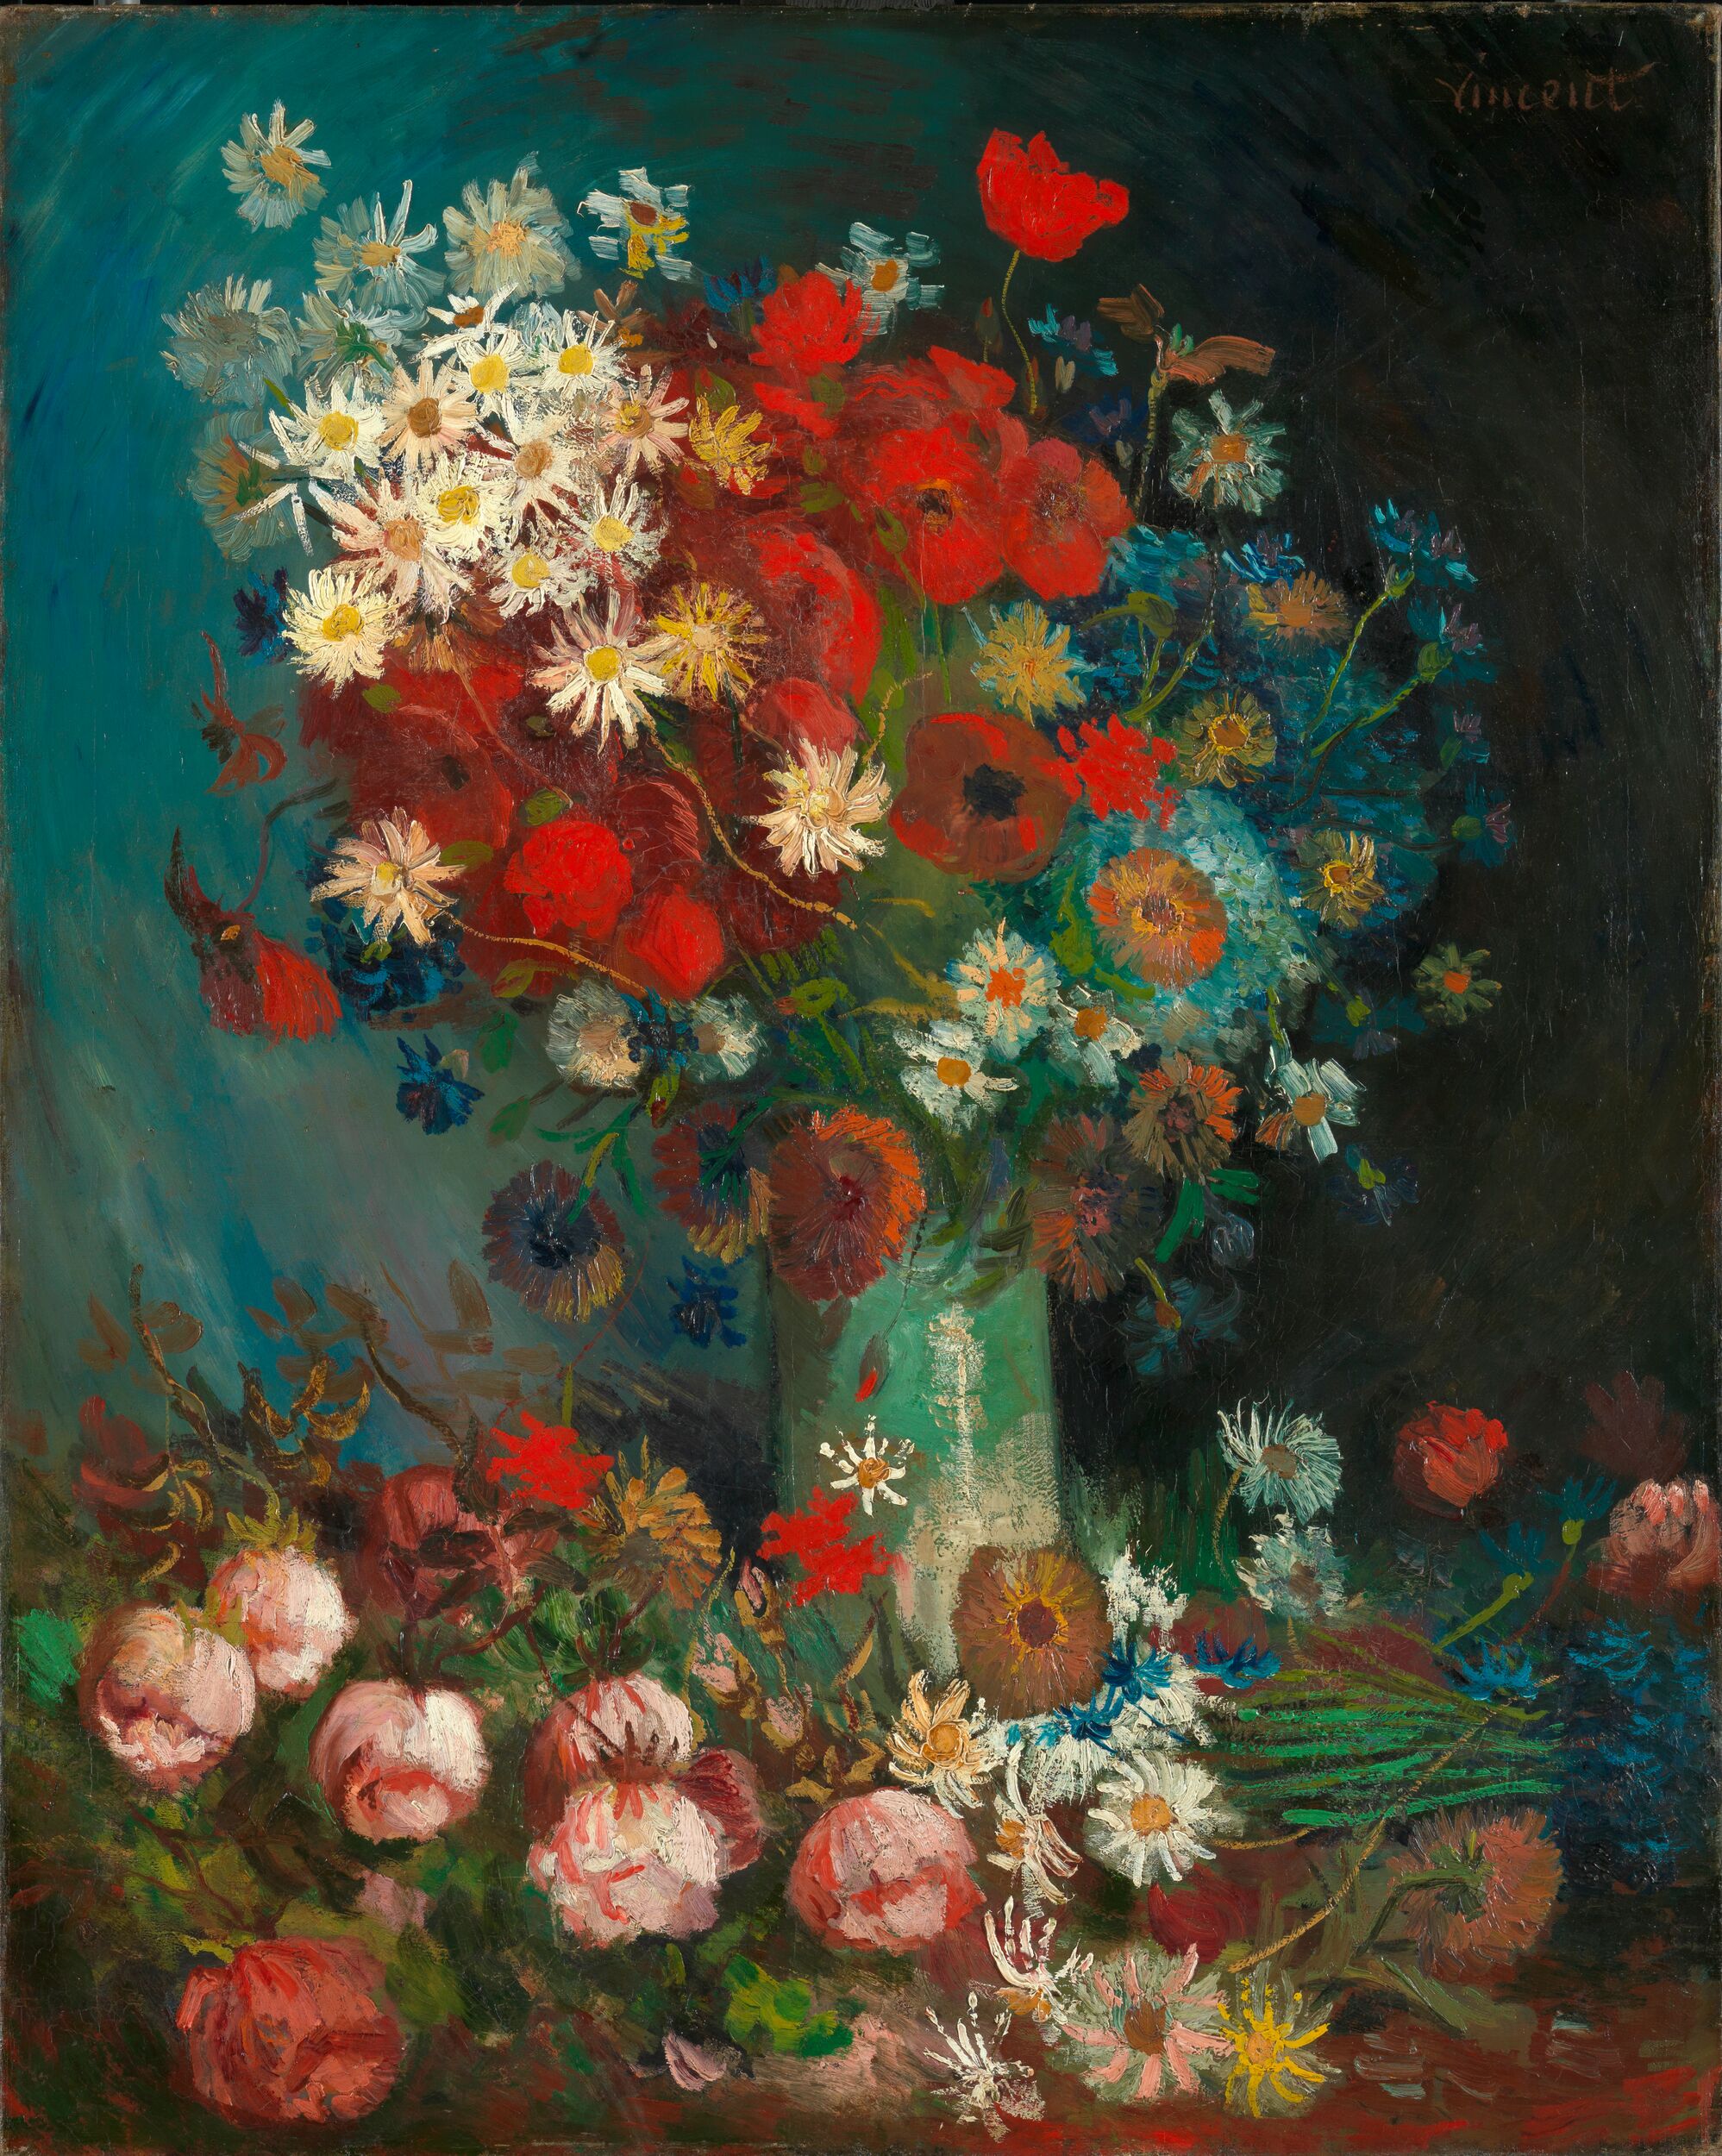 لوحة طبيعة صامتة لورود وأزهار  by فينسنت فان جوخ - 1886-1887 - الأبعاد: 100 × 70 سم 